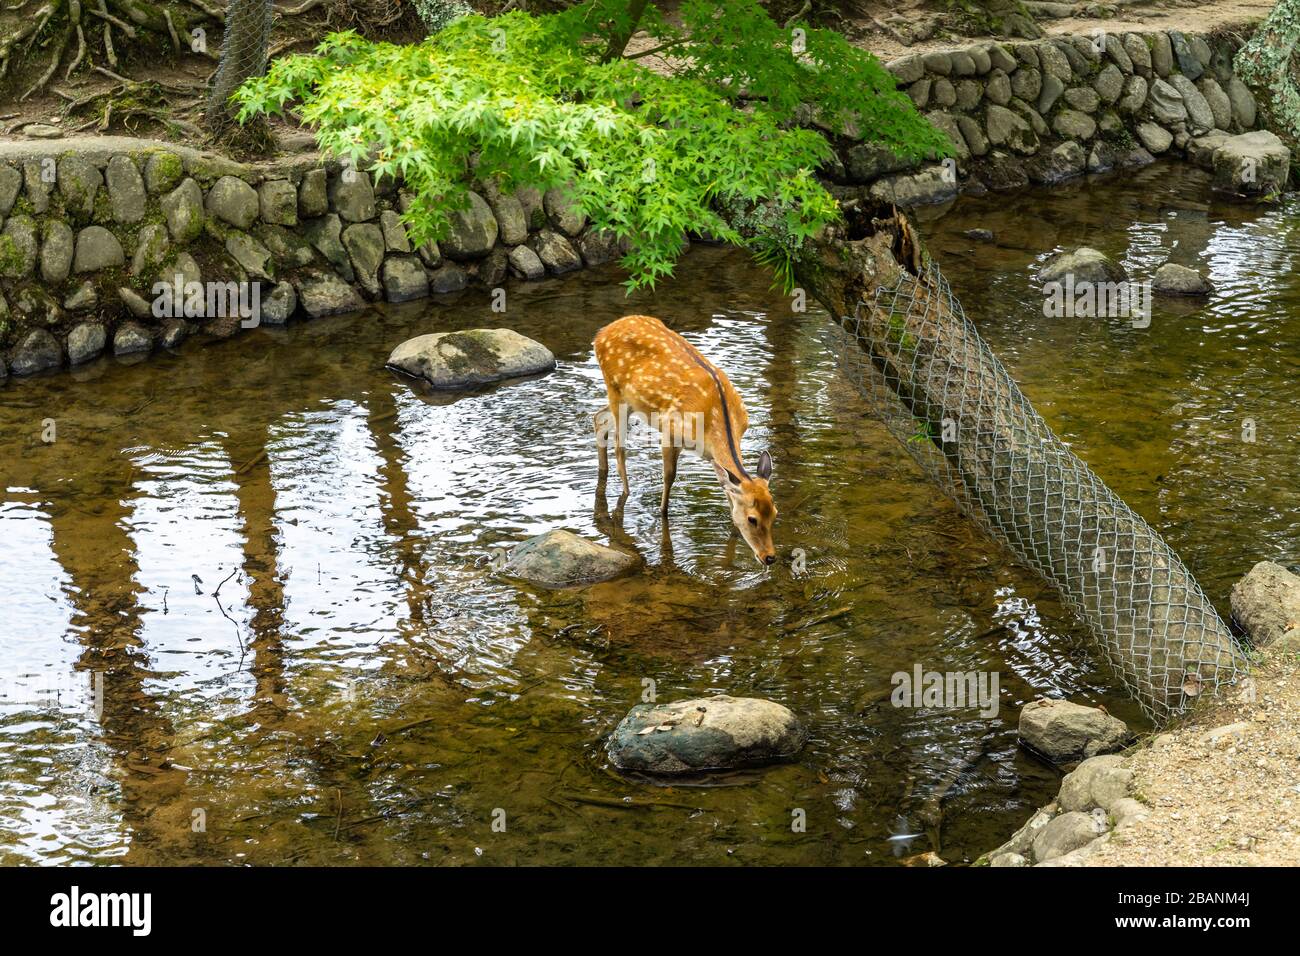 A deer crossing a small river at Nara Park, Japan Stock Photo